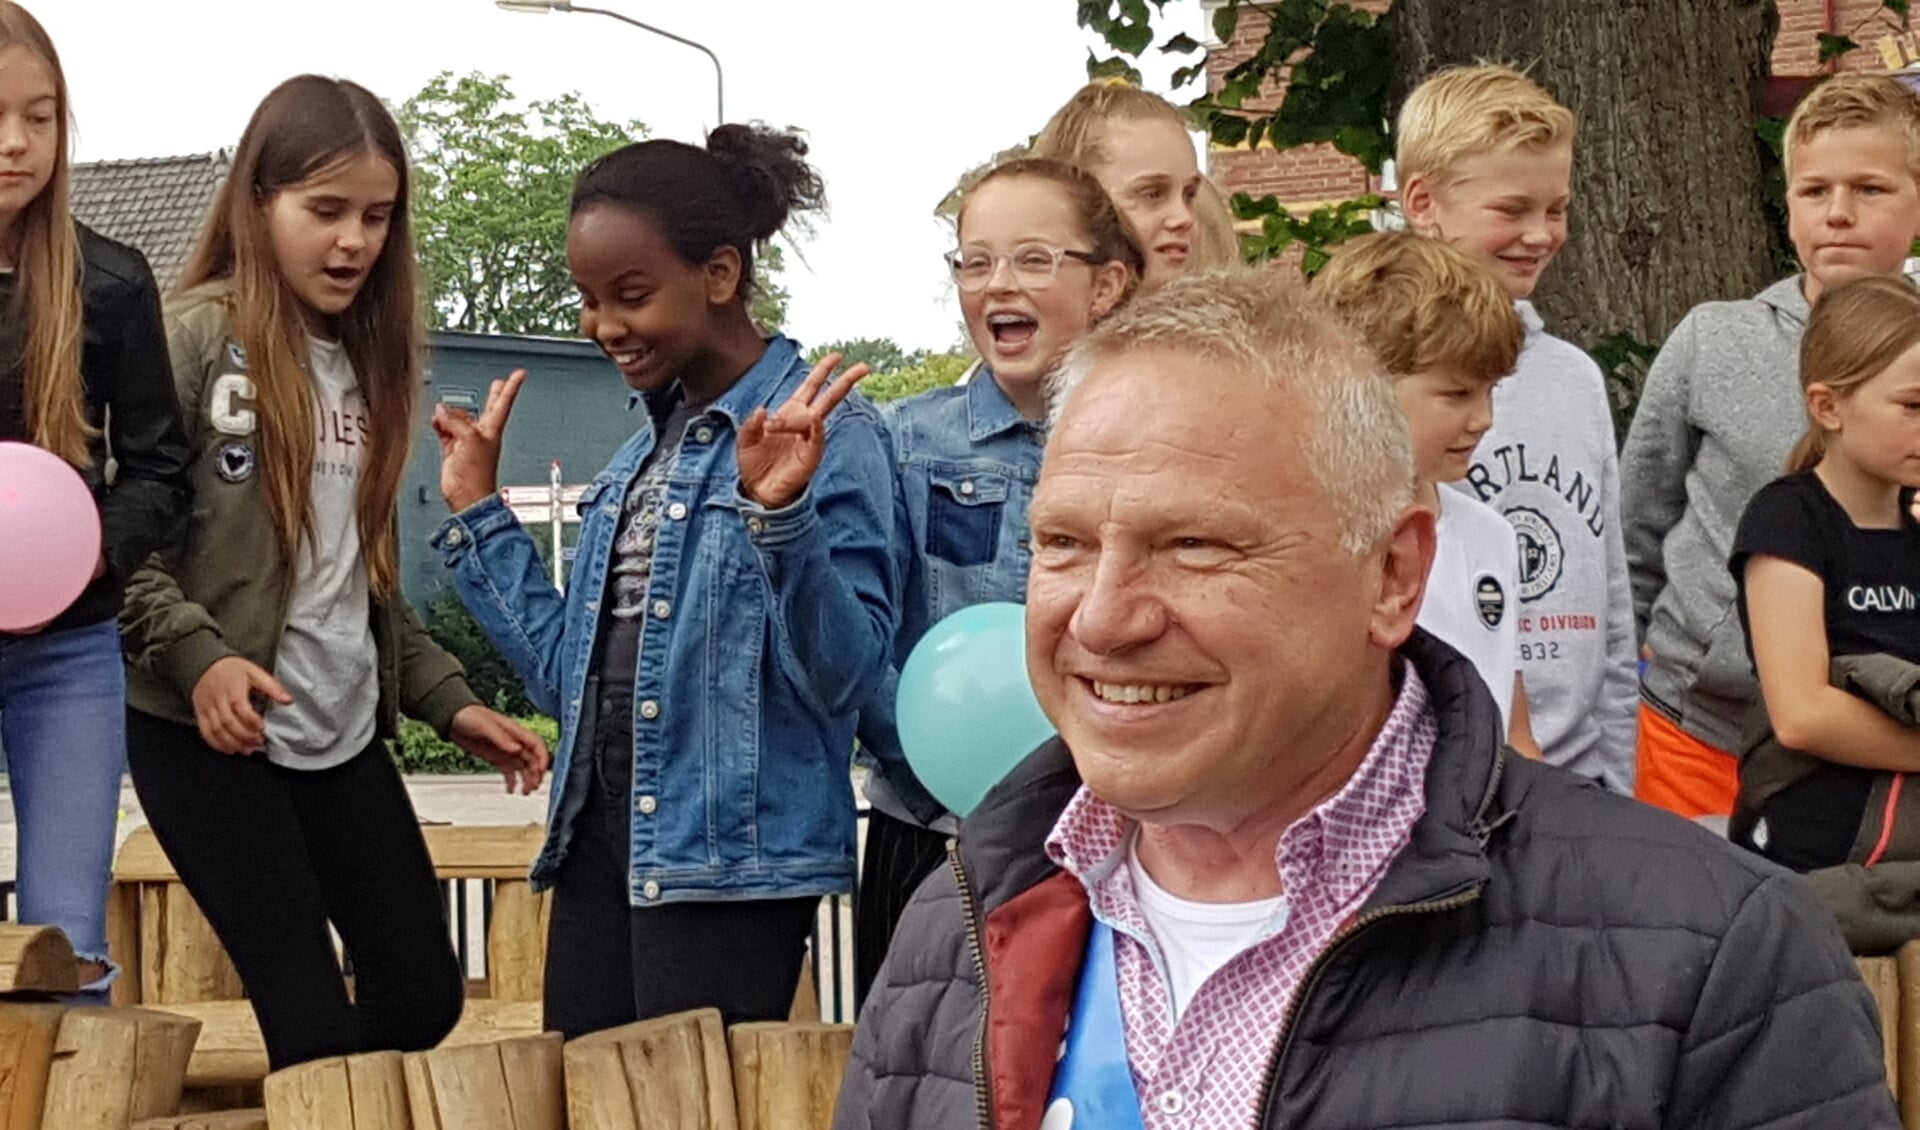 Gerard 'Pim' Huijskes wordt enthousiast ontvangen op het schoolplein. Foto: Kyra Broshuis